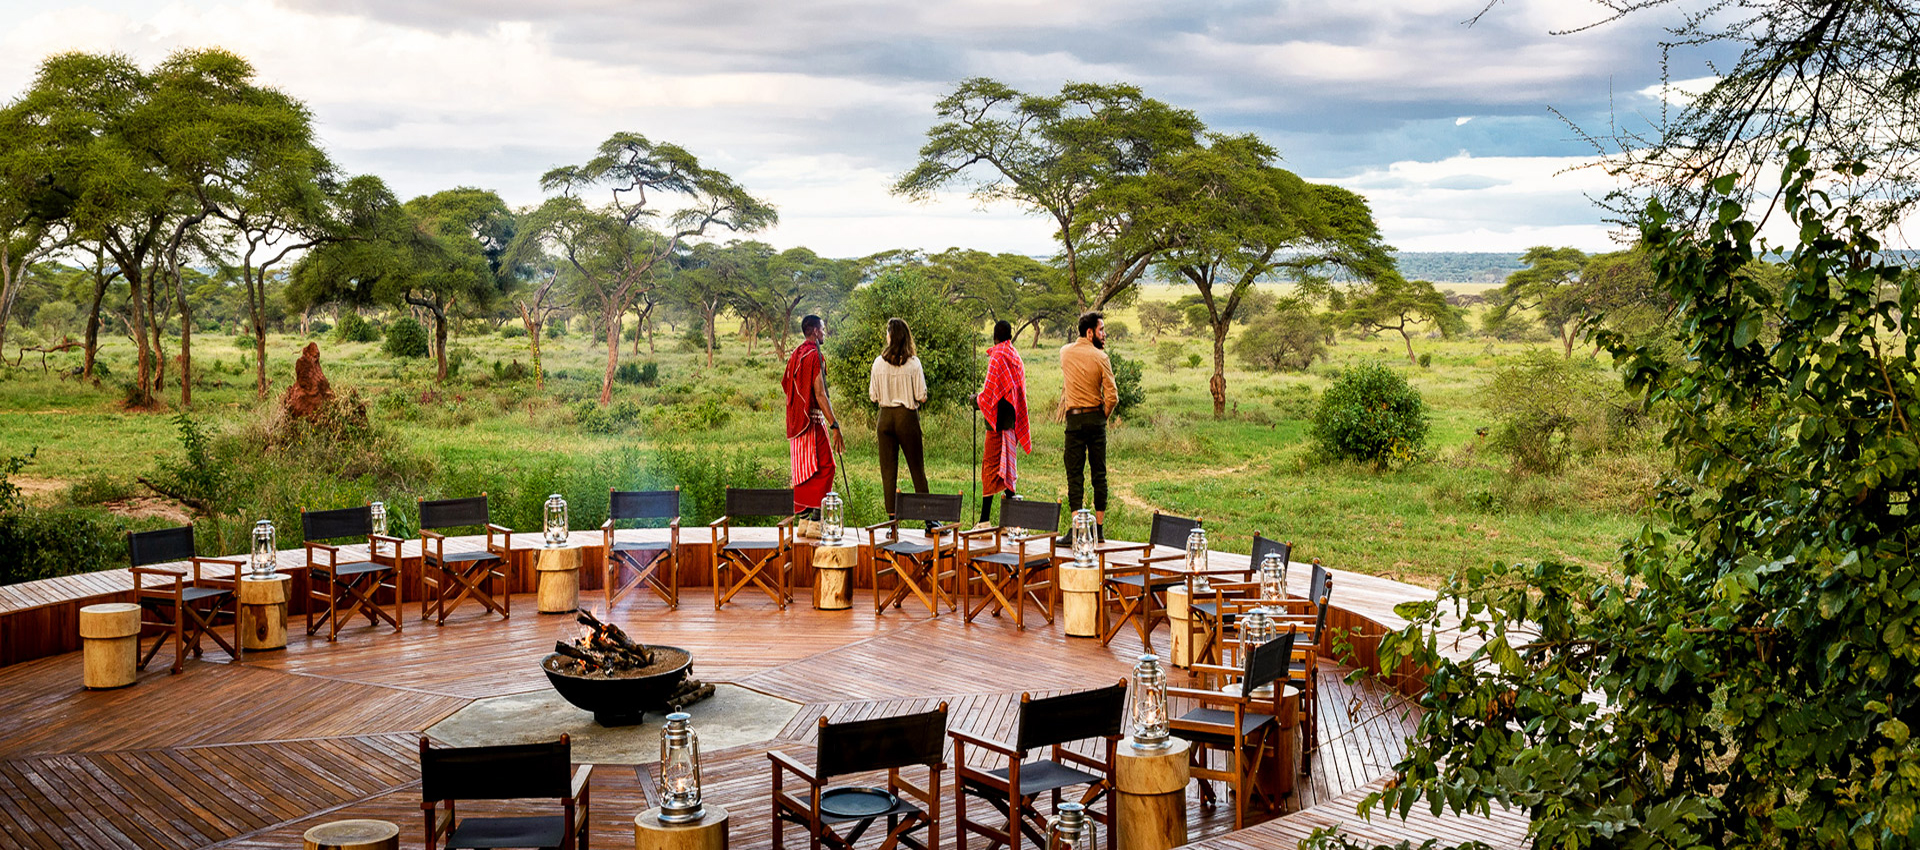 Unforgettable Luxury Safari Experiences In Tanzania